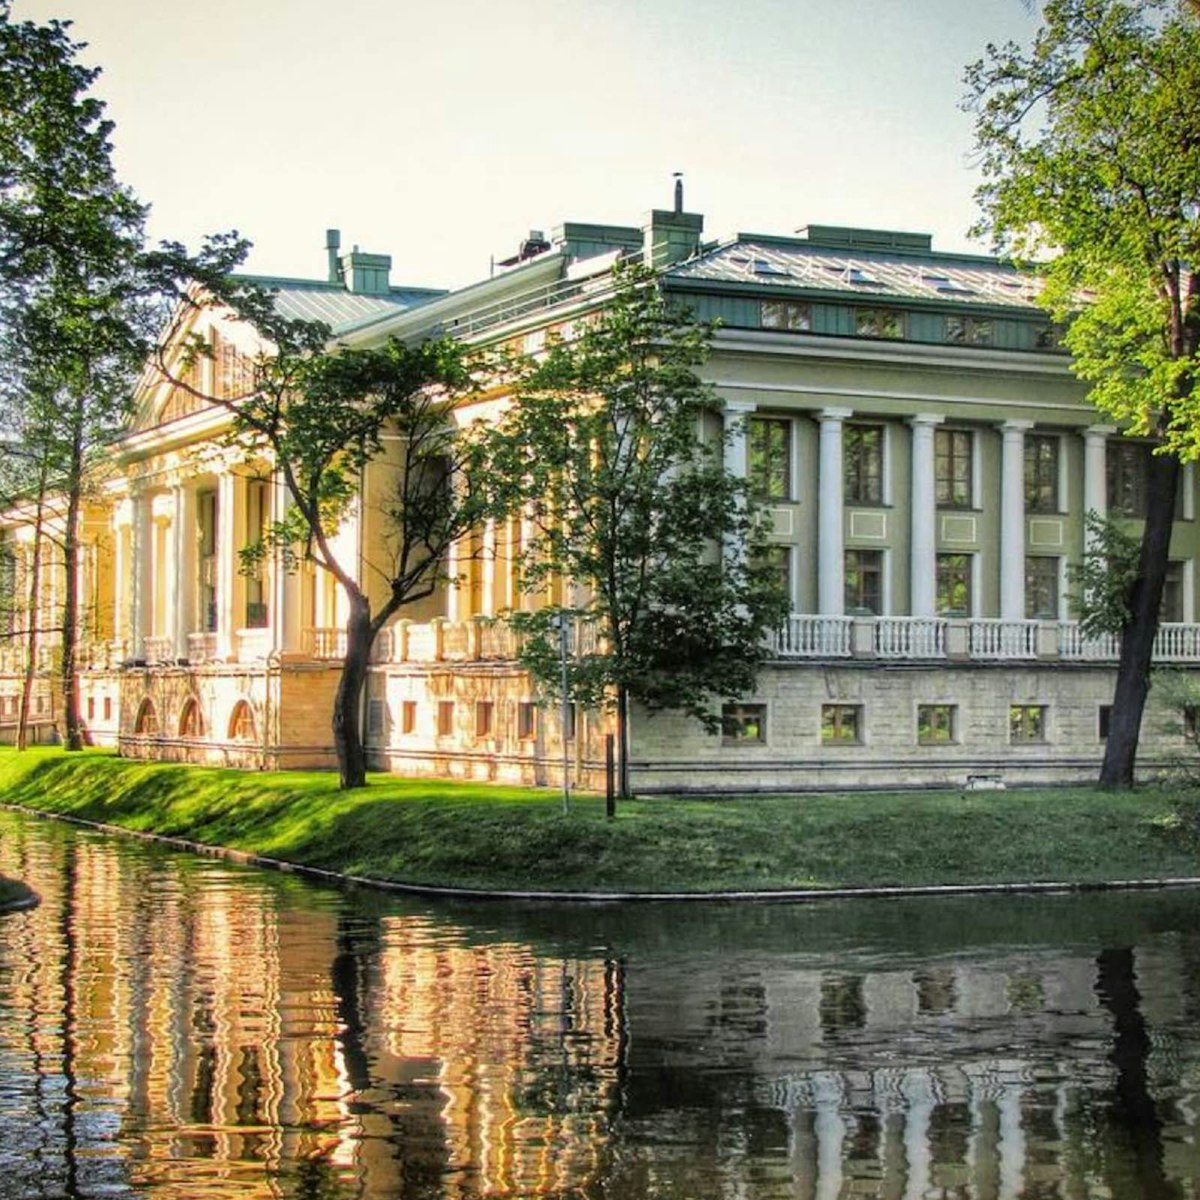 Kamennoostrovsky Palace on Kamenny Island.